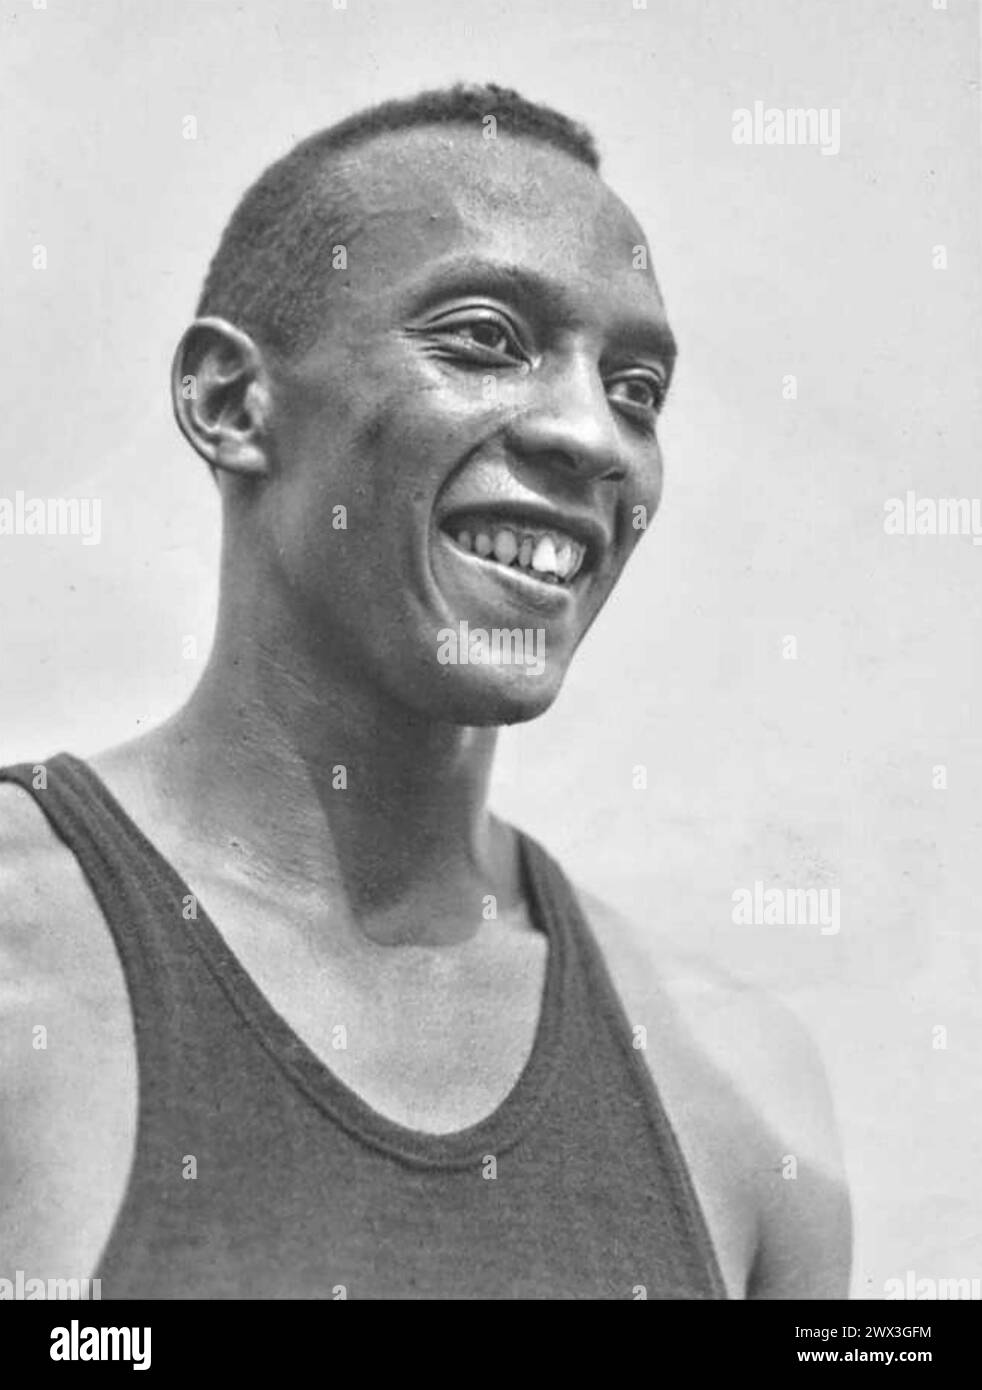 JESSE OWENS (1913-1980) athlète américain sur le terrain et l'athlétisme aux Jeux olympiques d'été de 1936 où il a remporté quatre médailles d'or Banque D'Images